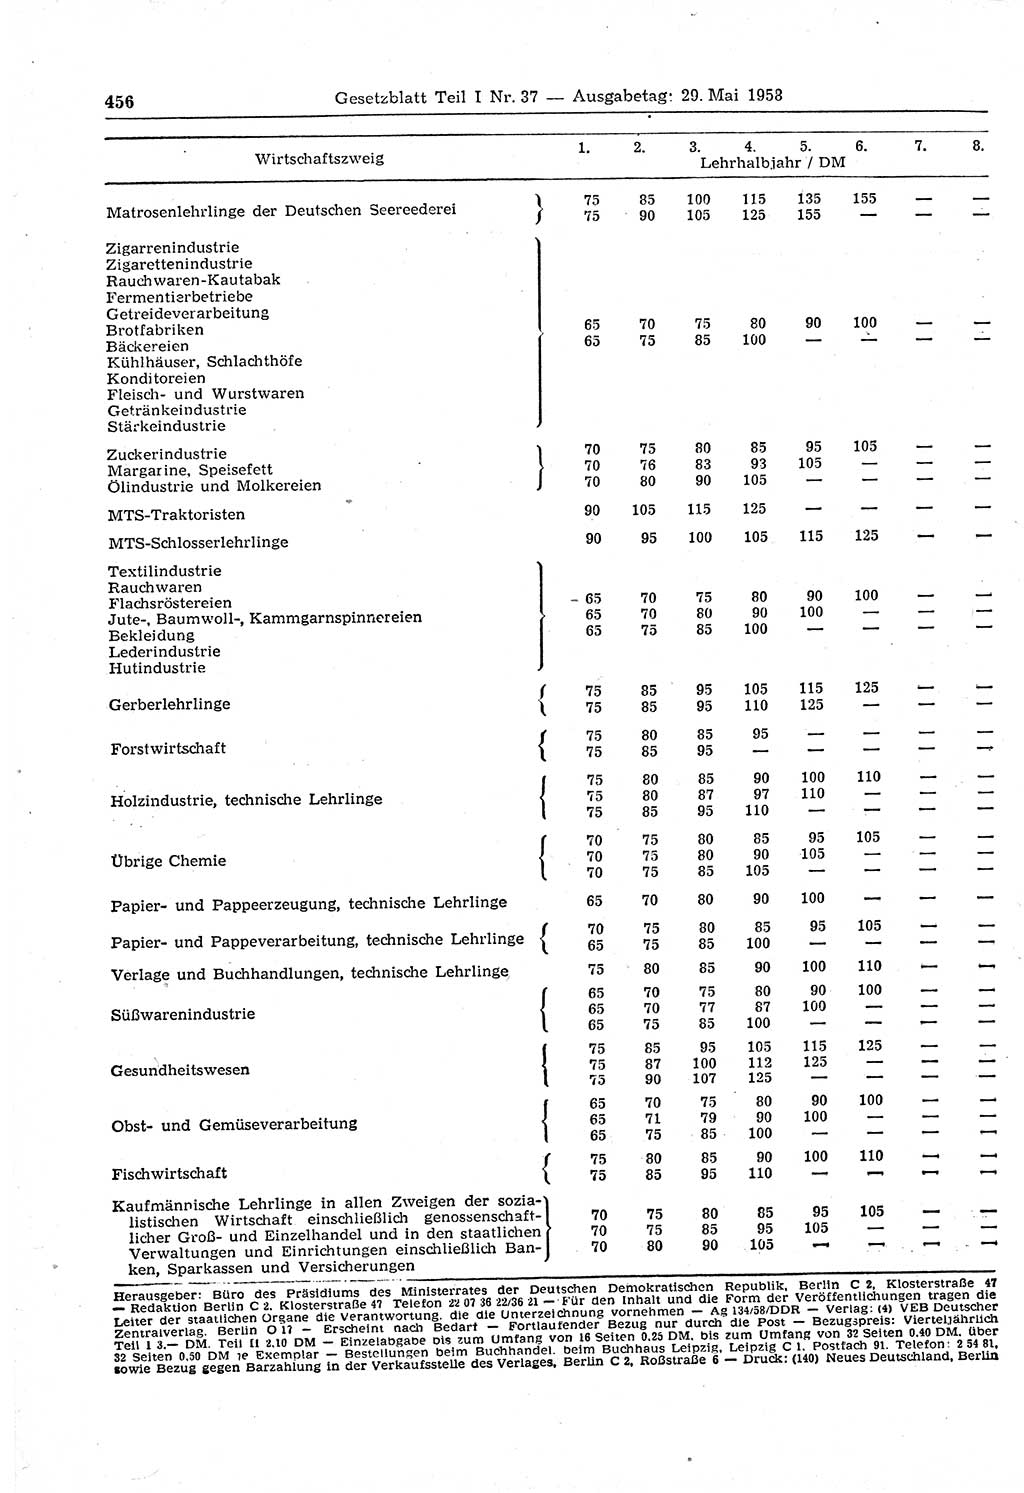 Gesetzblatt (GBl.) der Deutschen Demokratischen Republik (DDR) Teil Ⅰ 1958, Seite 456 (GBl. DDR Ⅰ 1958, S. 456)